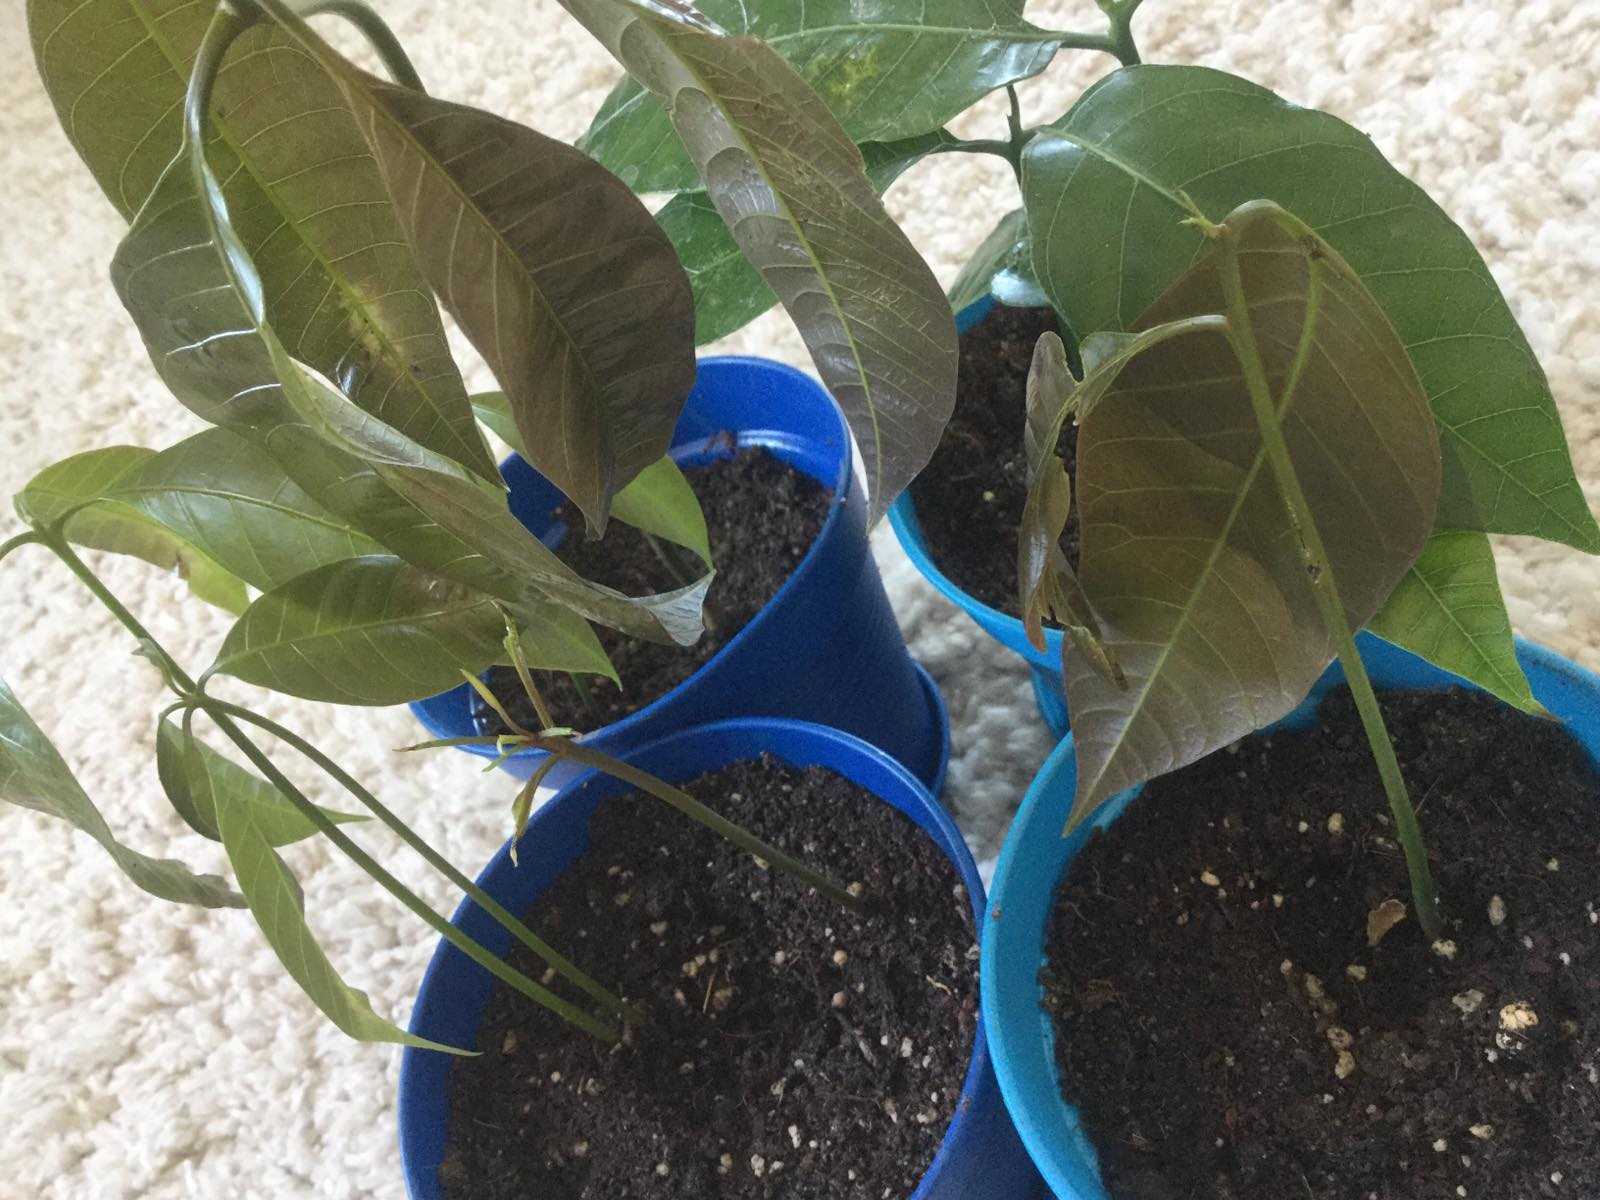 Как выращивать манго из косточки в домашних условиях в горшке: можно ли посадить фрукт из семечки и как правильно это сделать, как ухаживать, а также фото selo.guru — интернет портал о сельском хозяйстве